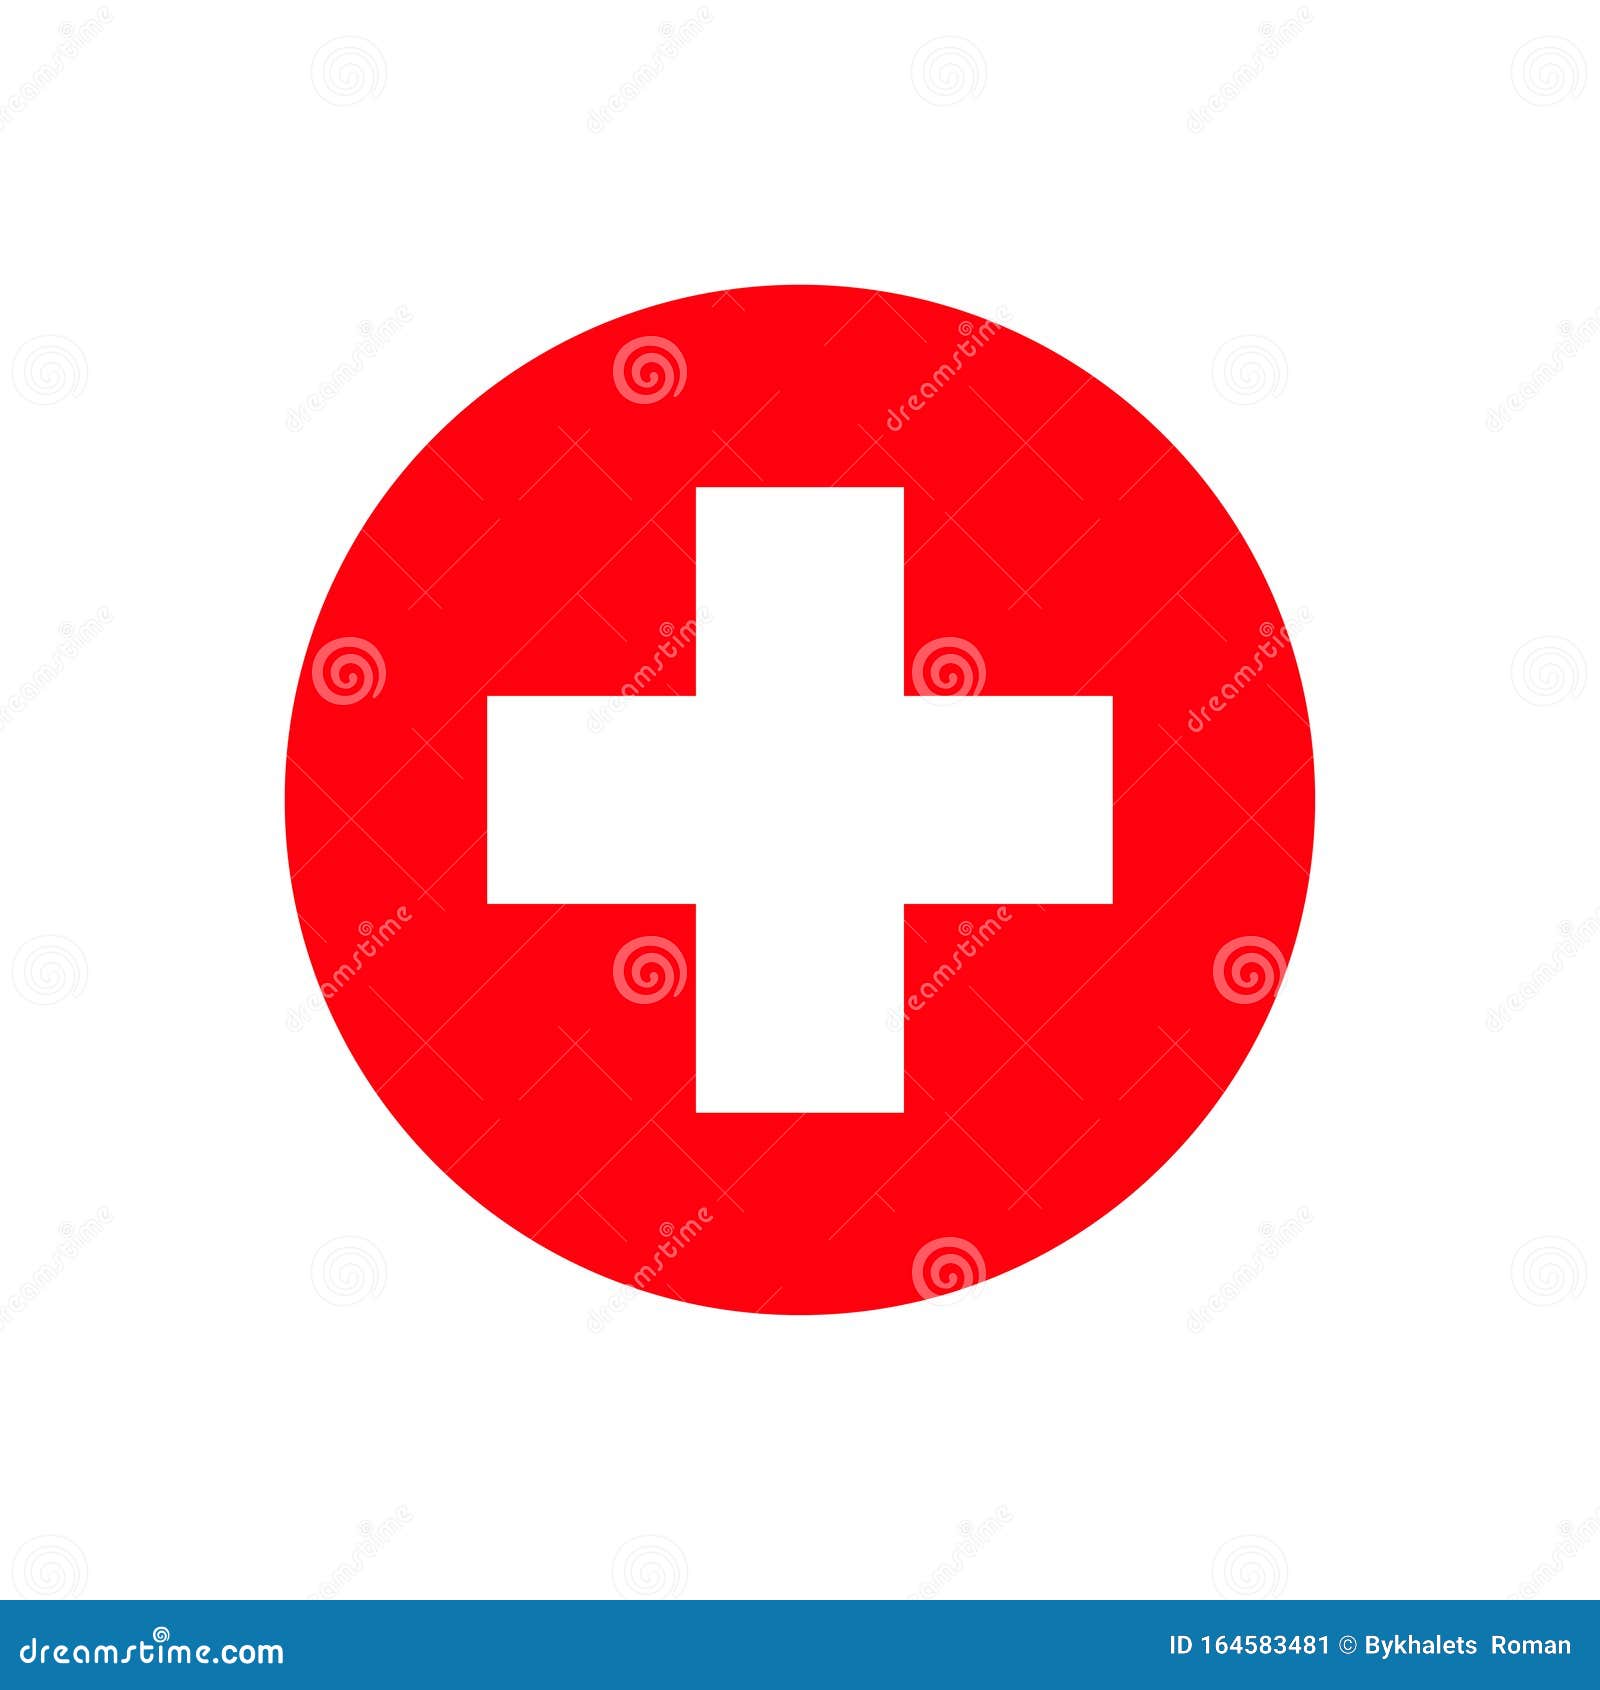 Bạn sẽ không thể bỏ qua các hình ảnh về bệnh viện thập tím đỏ cách ly biểu tượng trên nền trắng này. Chúng phản ánh khả năng vững chắc và chuyên nghiệp của đội ngũ y tế và mong muốn của xã hội trong việc đẩy lùi dịch bệnh.